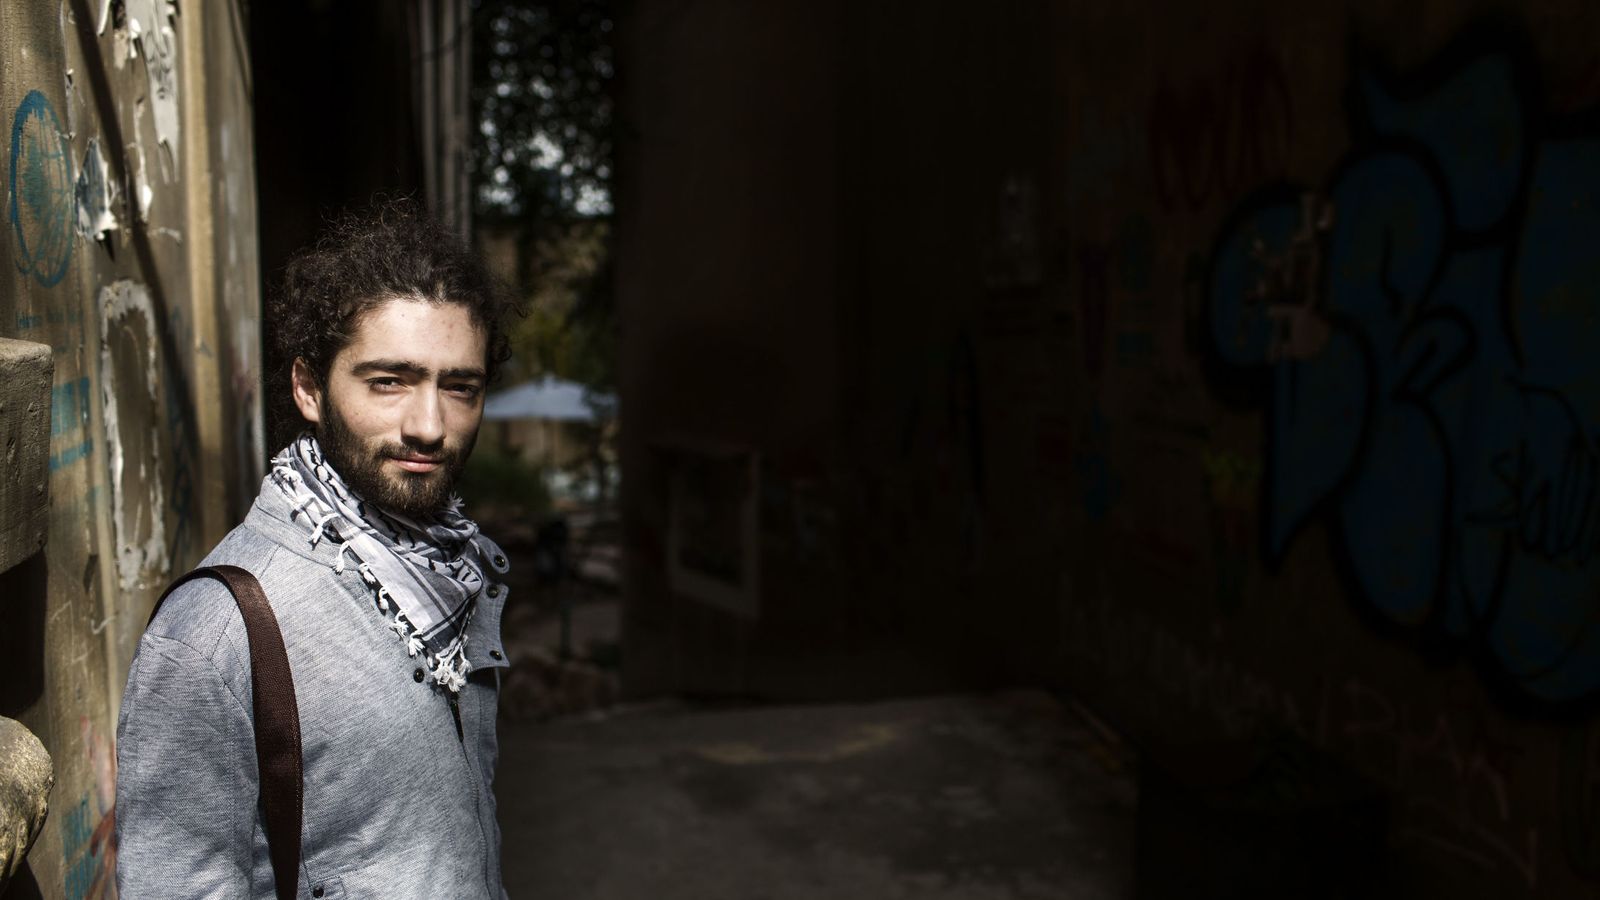 Foto: Retrato de Zaid, un joven sirio seleccionado por el proyecto Habesha, en las calles de Beirut, Líbano (Foto: Diego Ibarra Sánchez).